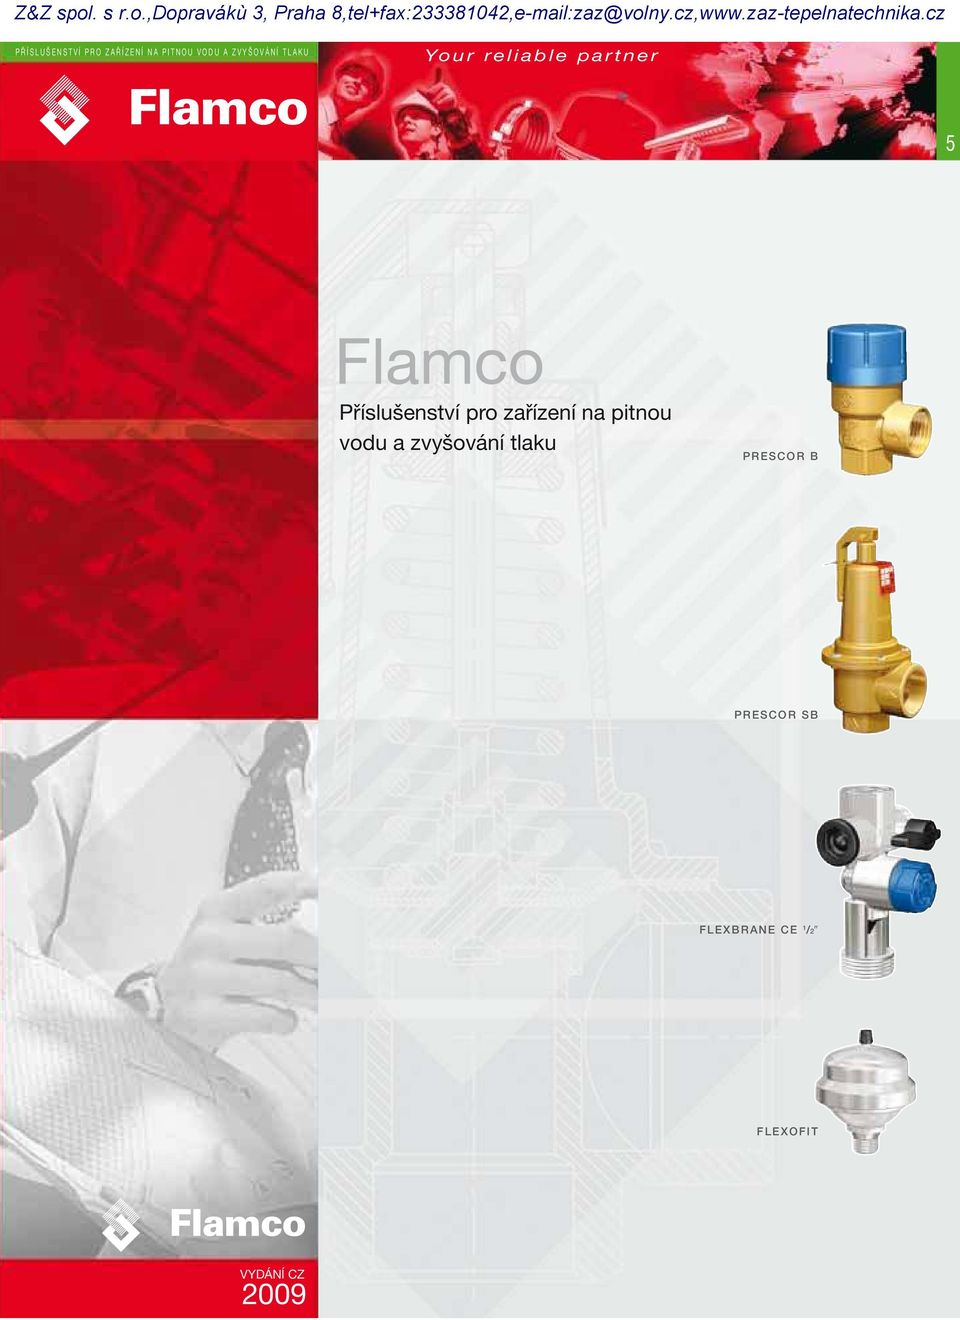 Flamco Příslušenství pro zařízení na pitnou vodu a zvyšování